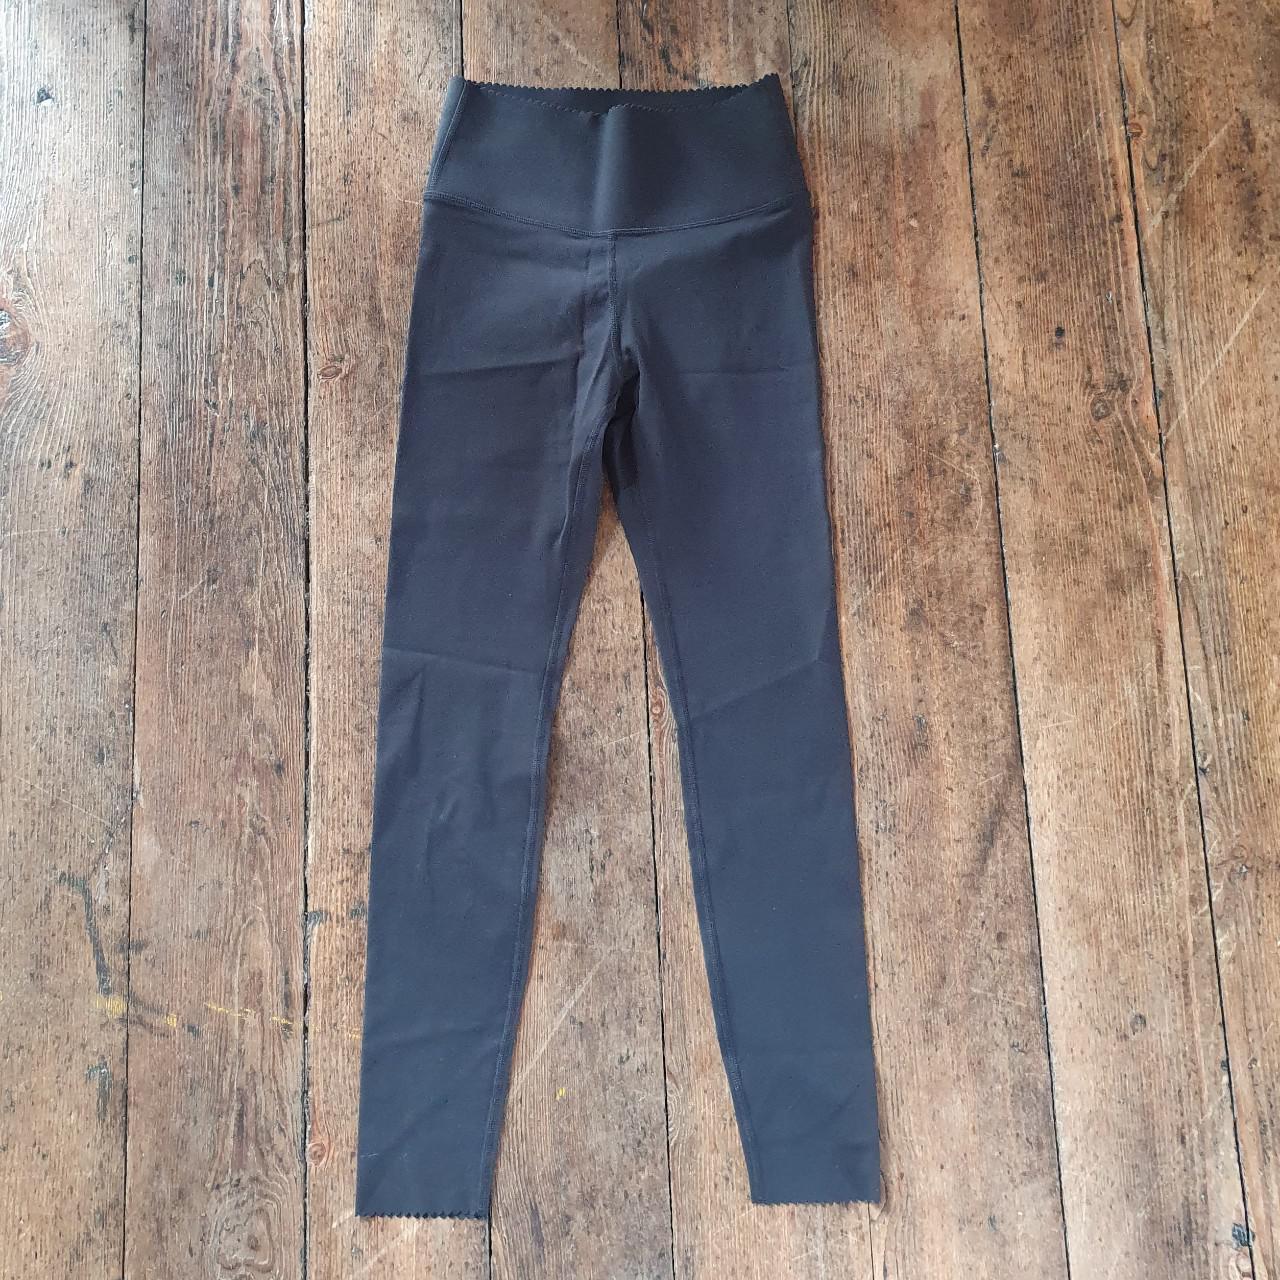 H&M Sport Shaping leggings. Black. Size UK8. Never - Depop